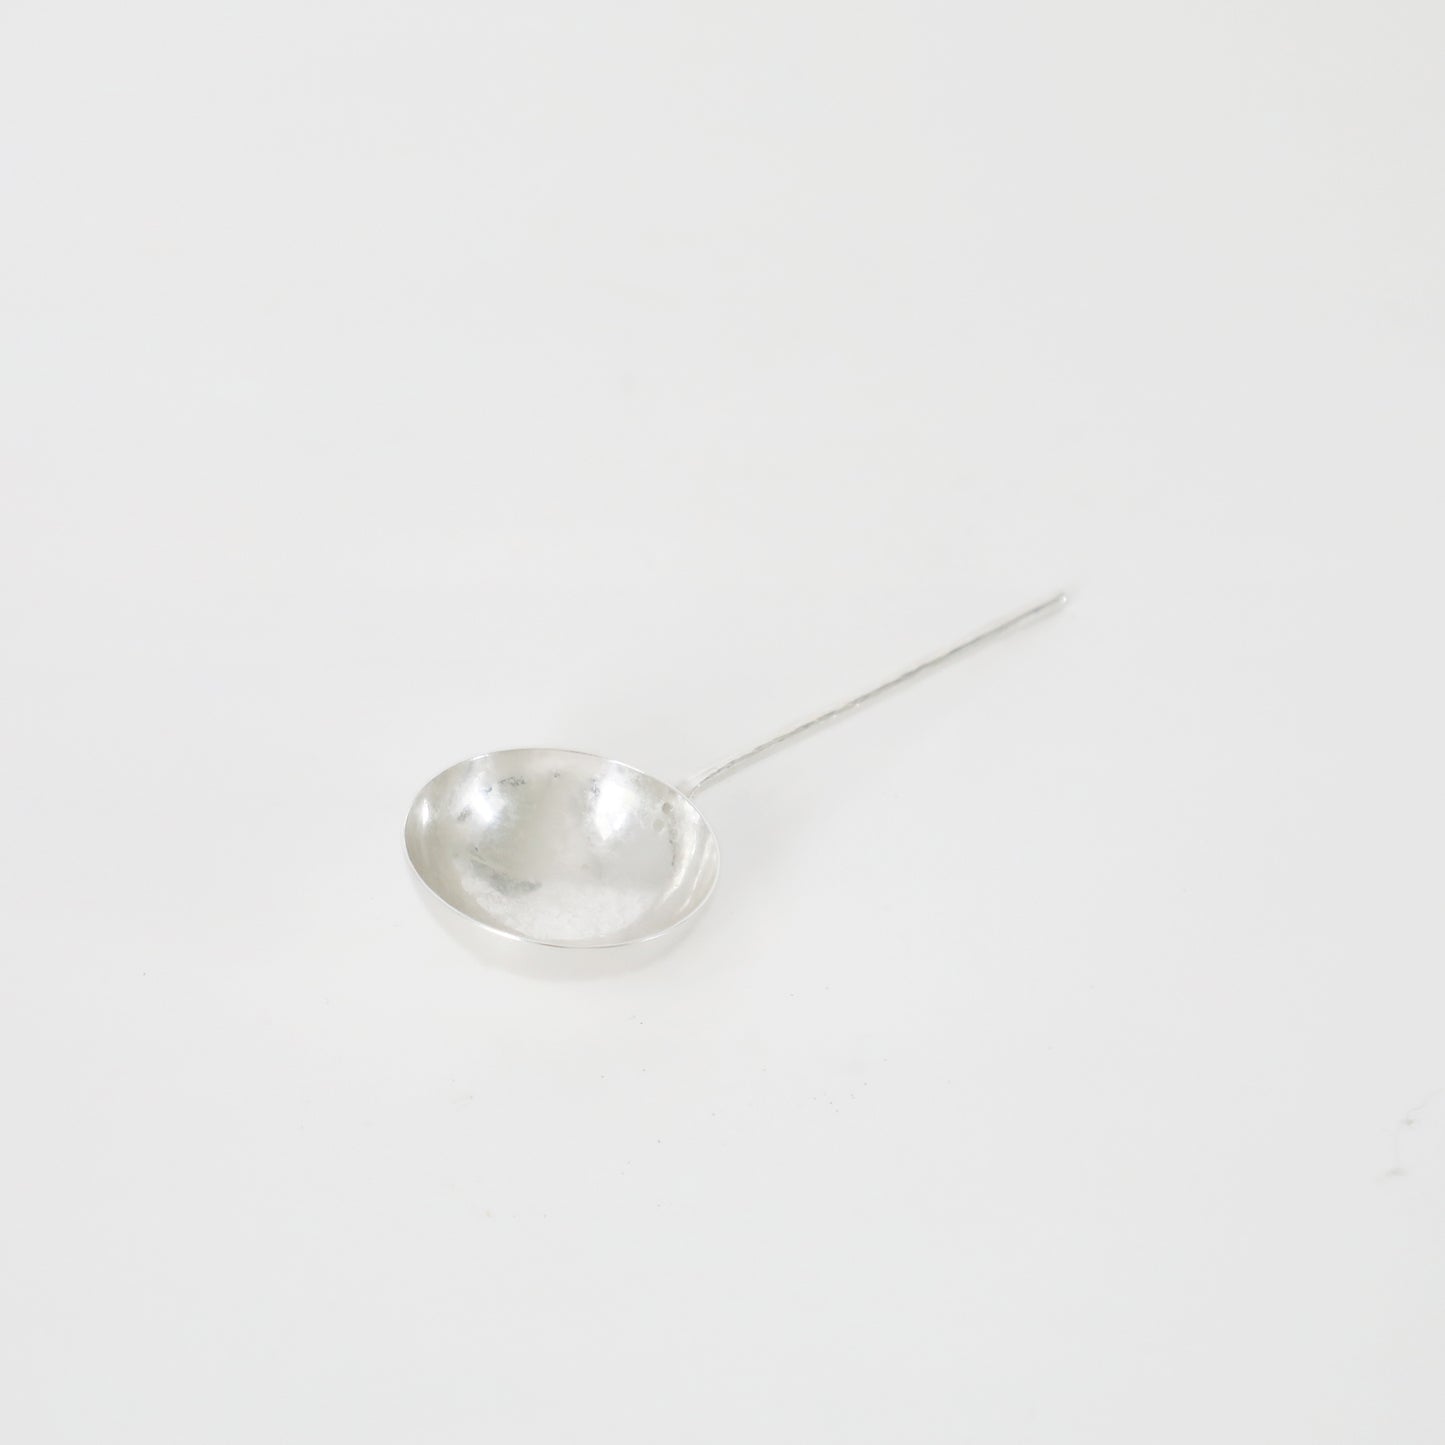 coffee bean spoon - silver